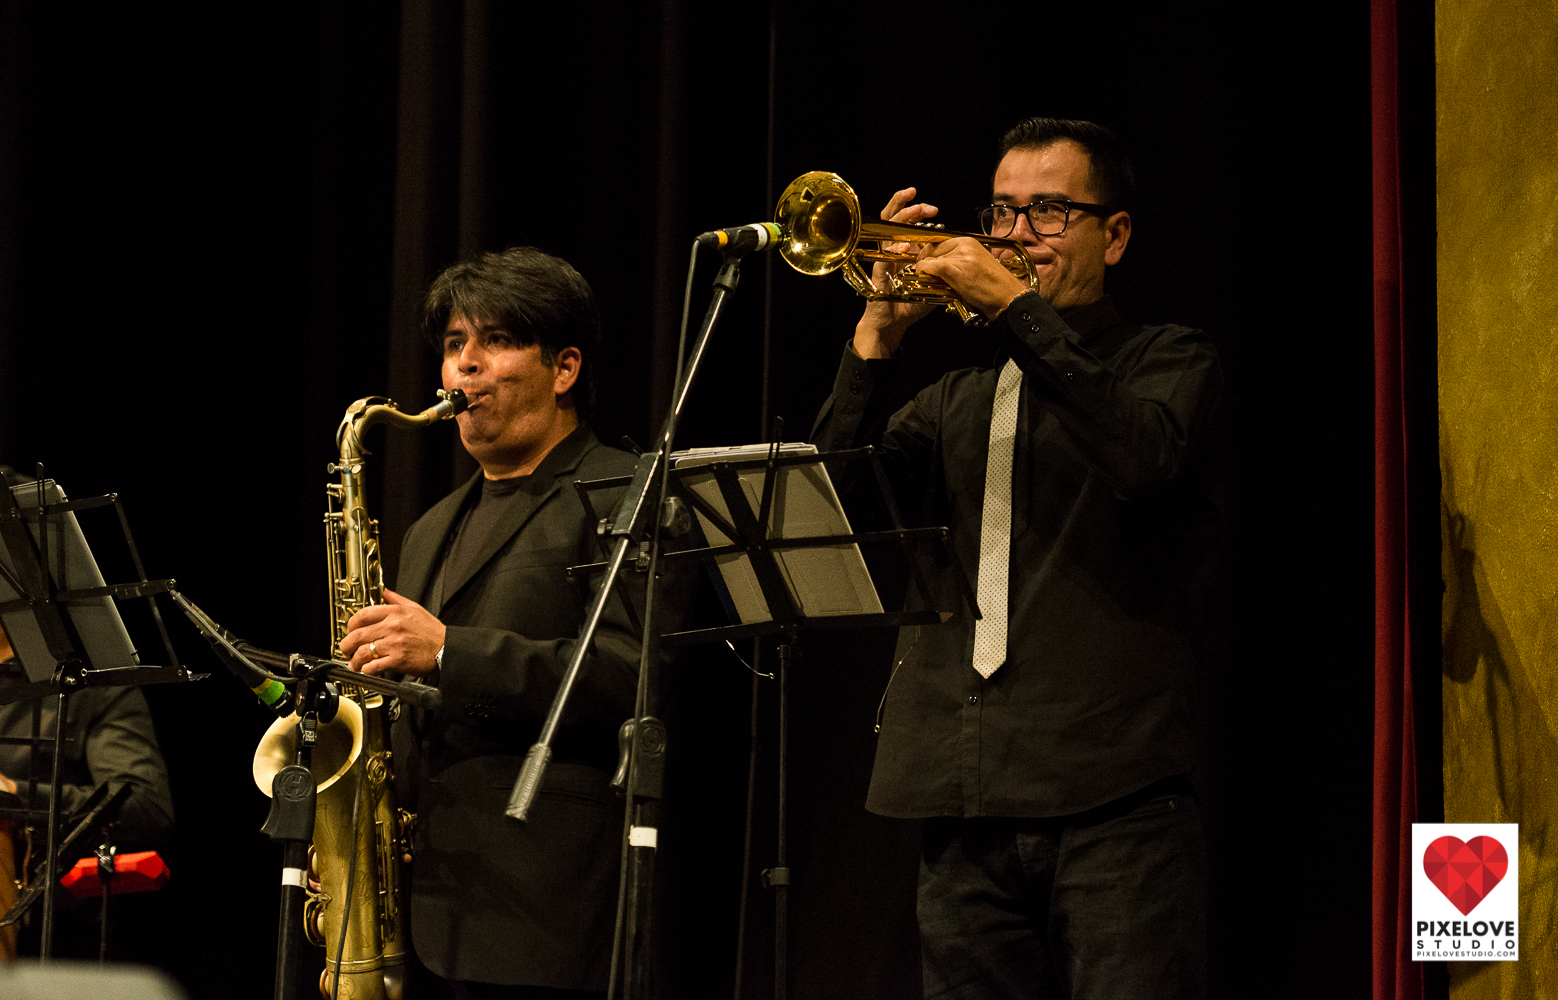 Festival Internacional de Jazz y Blues San Miguel de Allende, Guanajuato presenta el Concierto de Soul el 31 de marzo 2017 en el Teatro Angela Peralta.